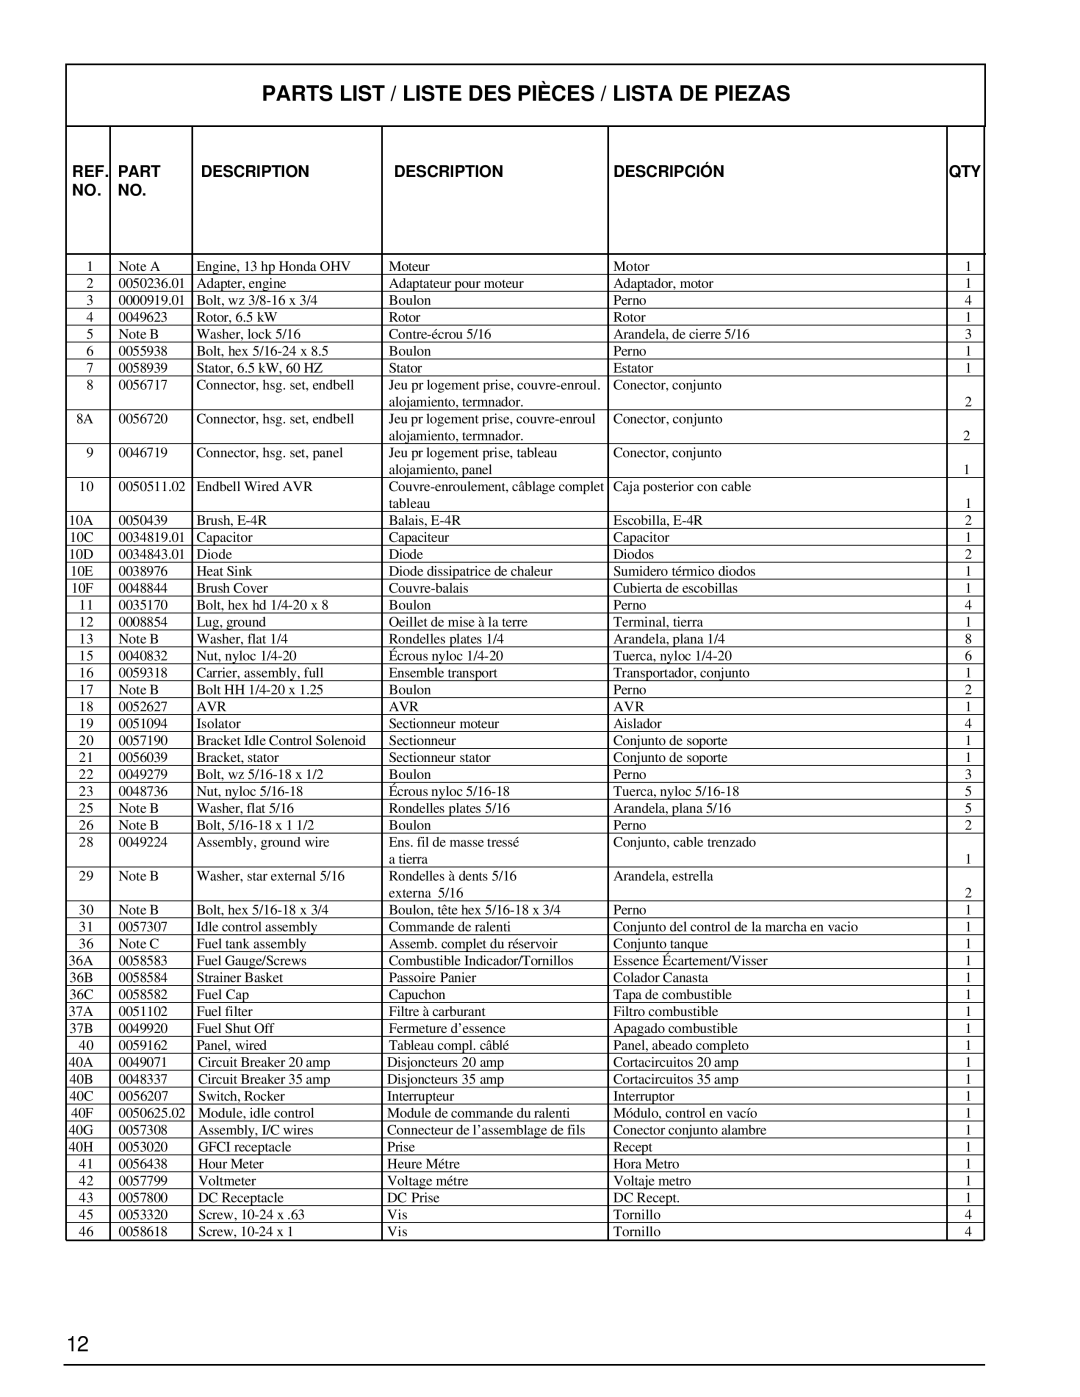 Powermate PM0496504.17 manual Parts List / Liste Des Pièces / Lista De Piezas, Description, Descripción 